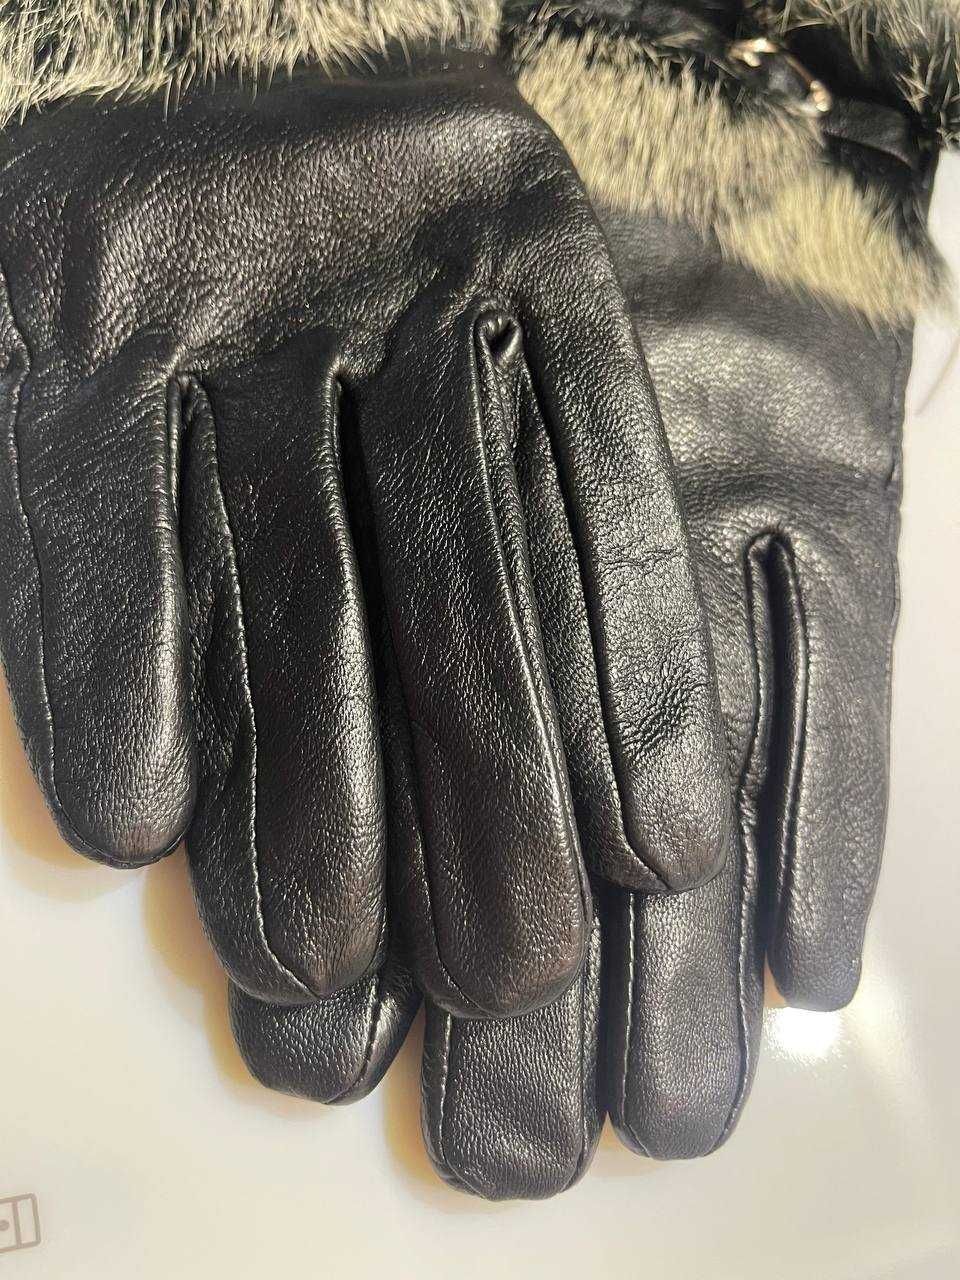 Кожаные перчатки итальянские натуральные